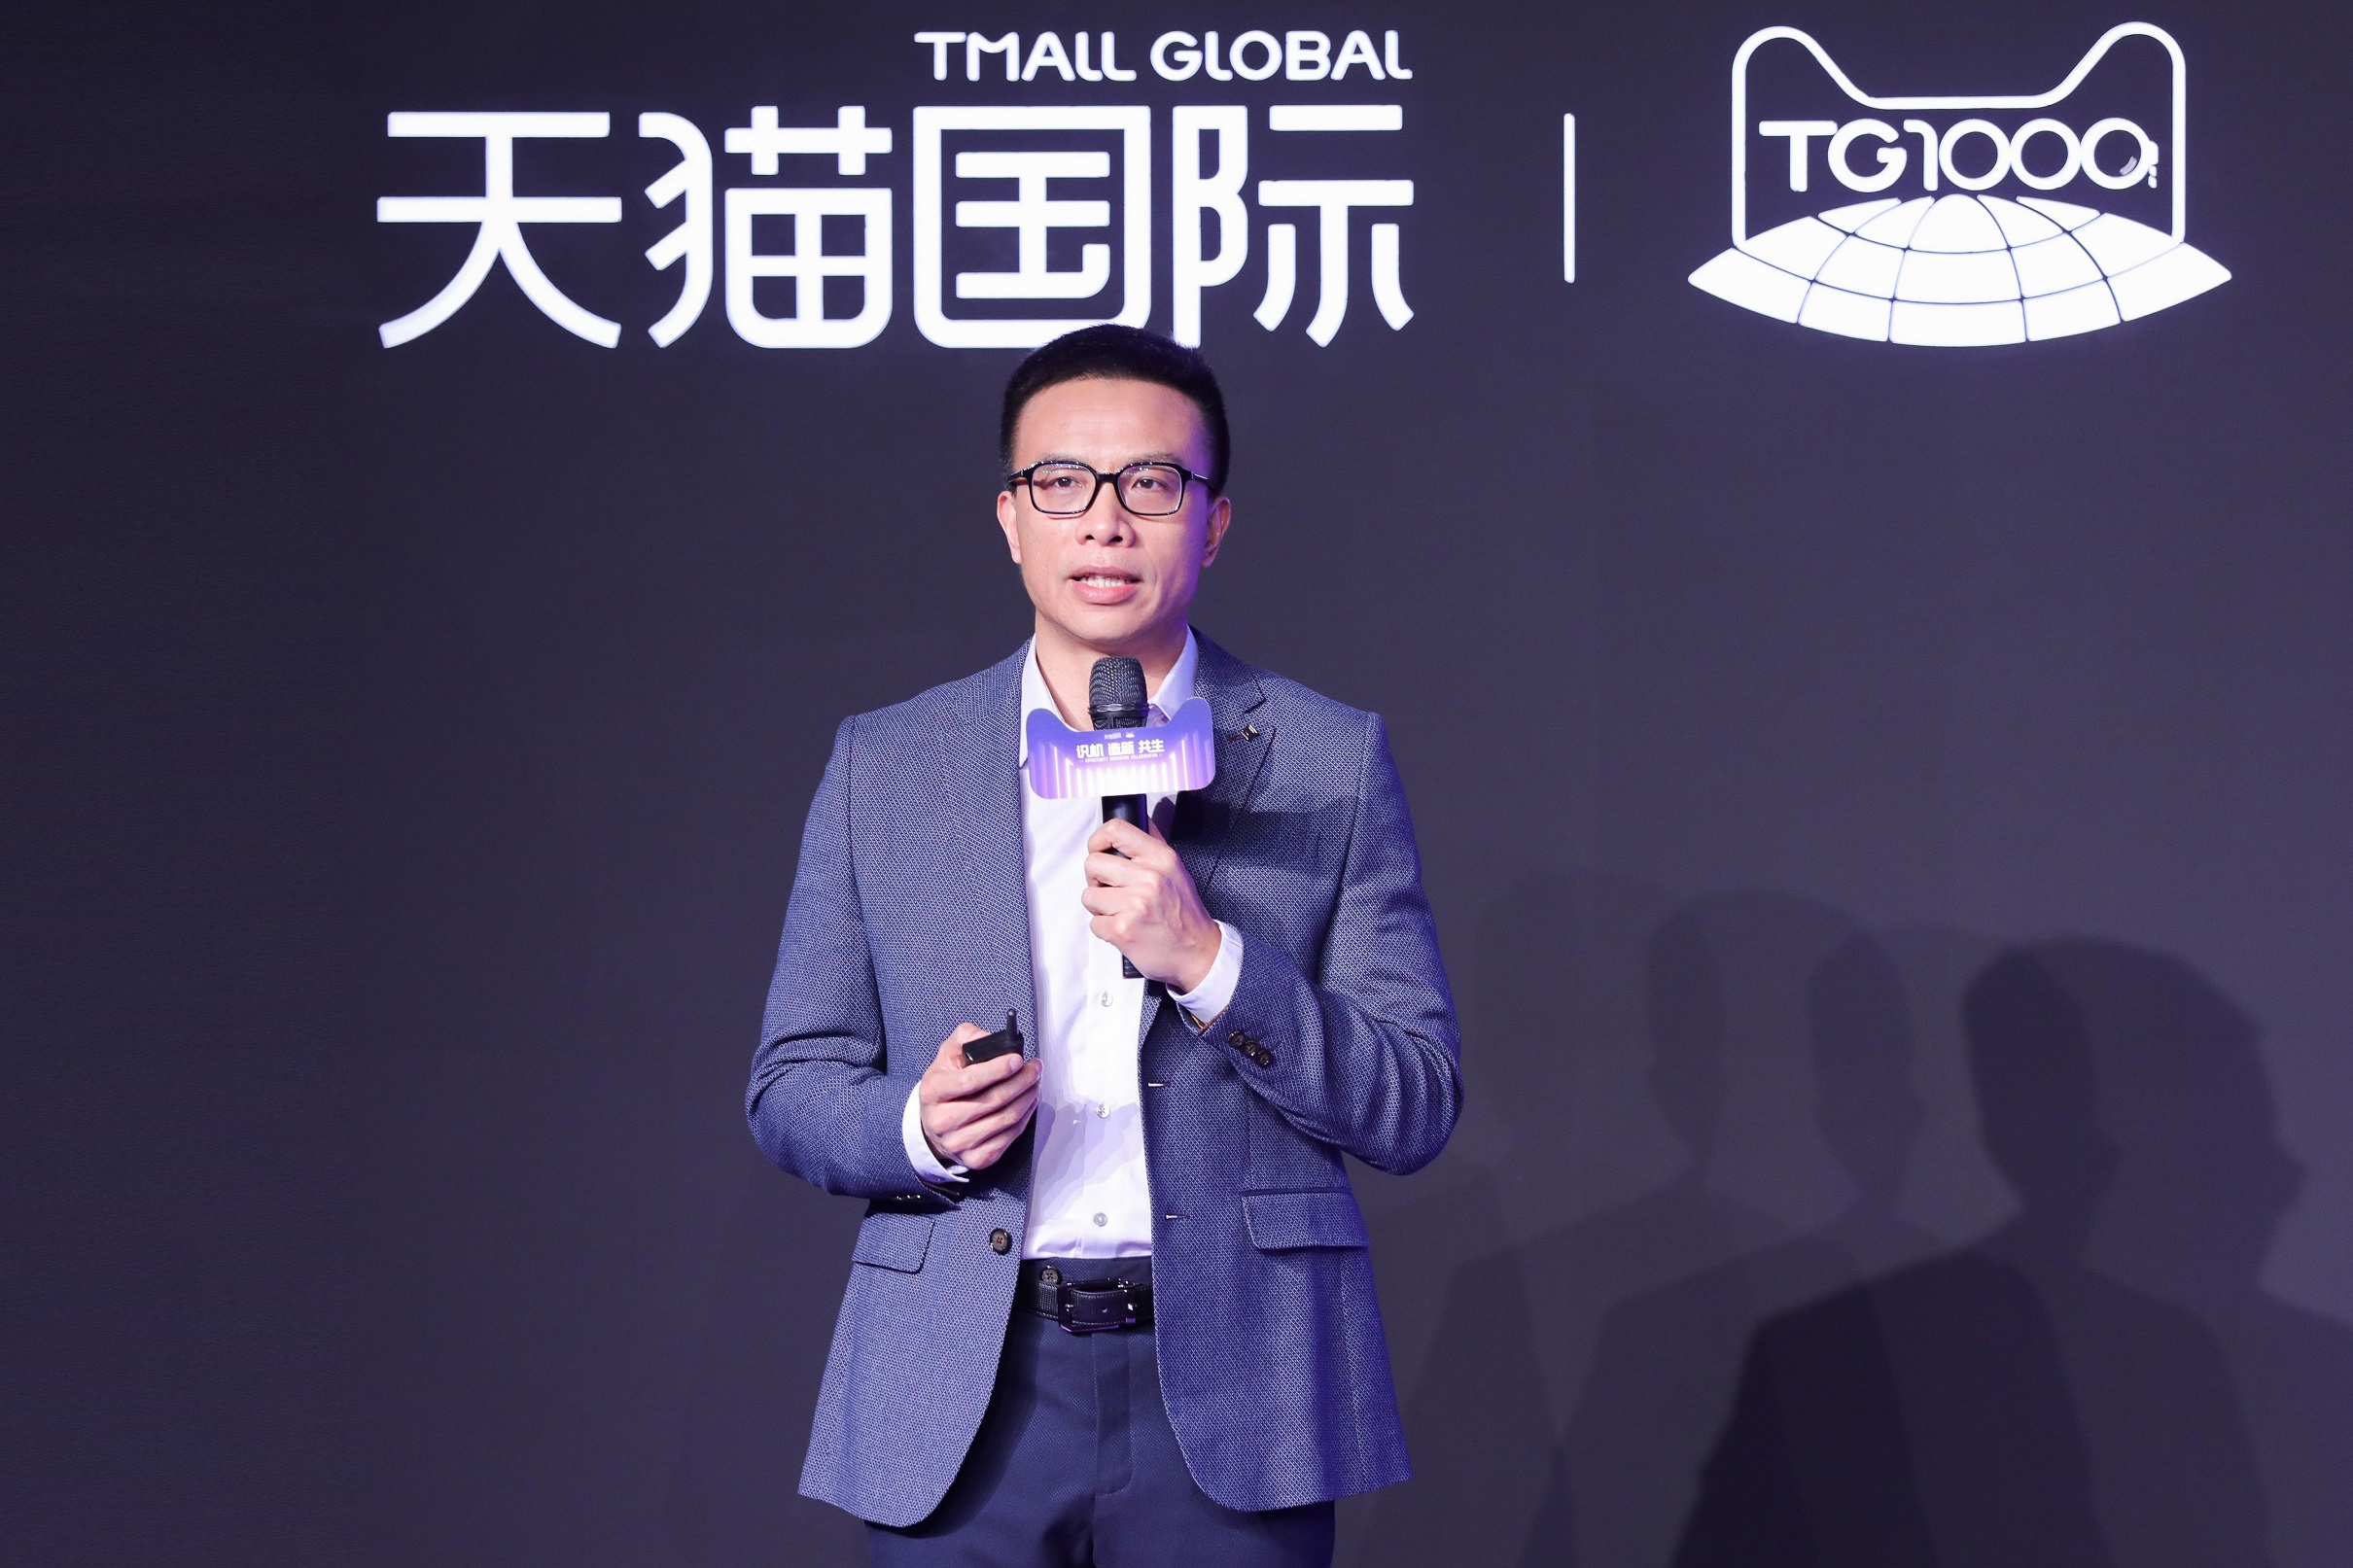 ทีมอลล์ โกลบอล เตรียมสนับสนุนแบรนด์ต่างประเทศเข้าสู่ตลาดจีน ตั้งเป้าหนุนแบรนด์ใหม่ 1,000 แบรนด์ ภายใน12 เดือน